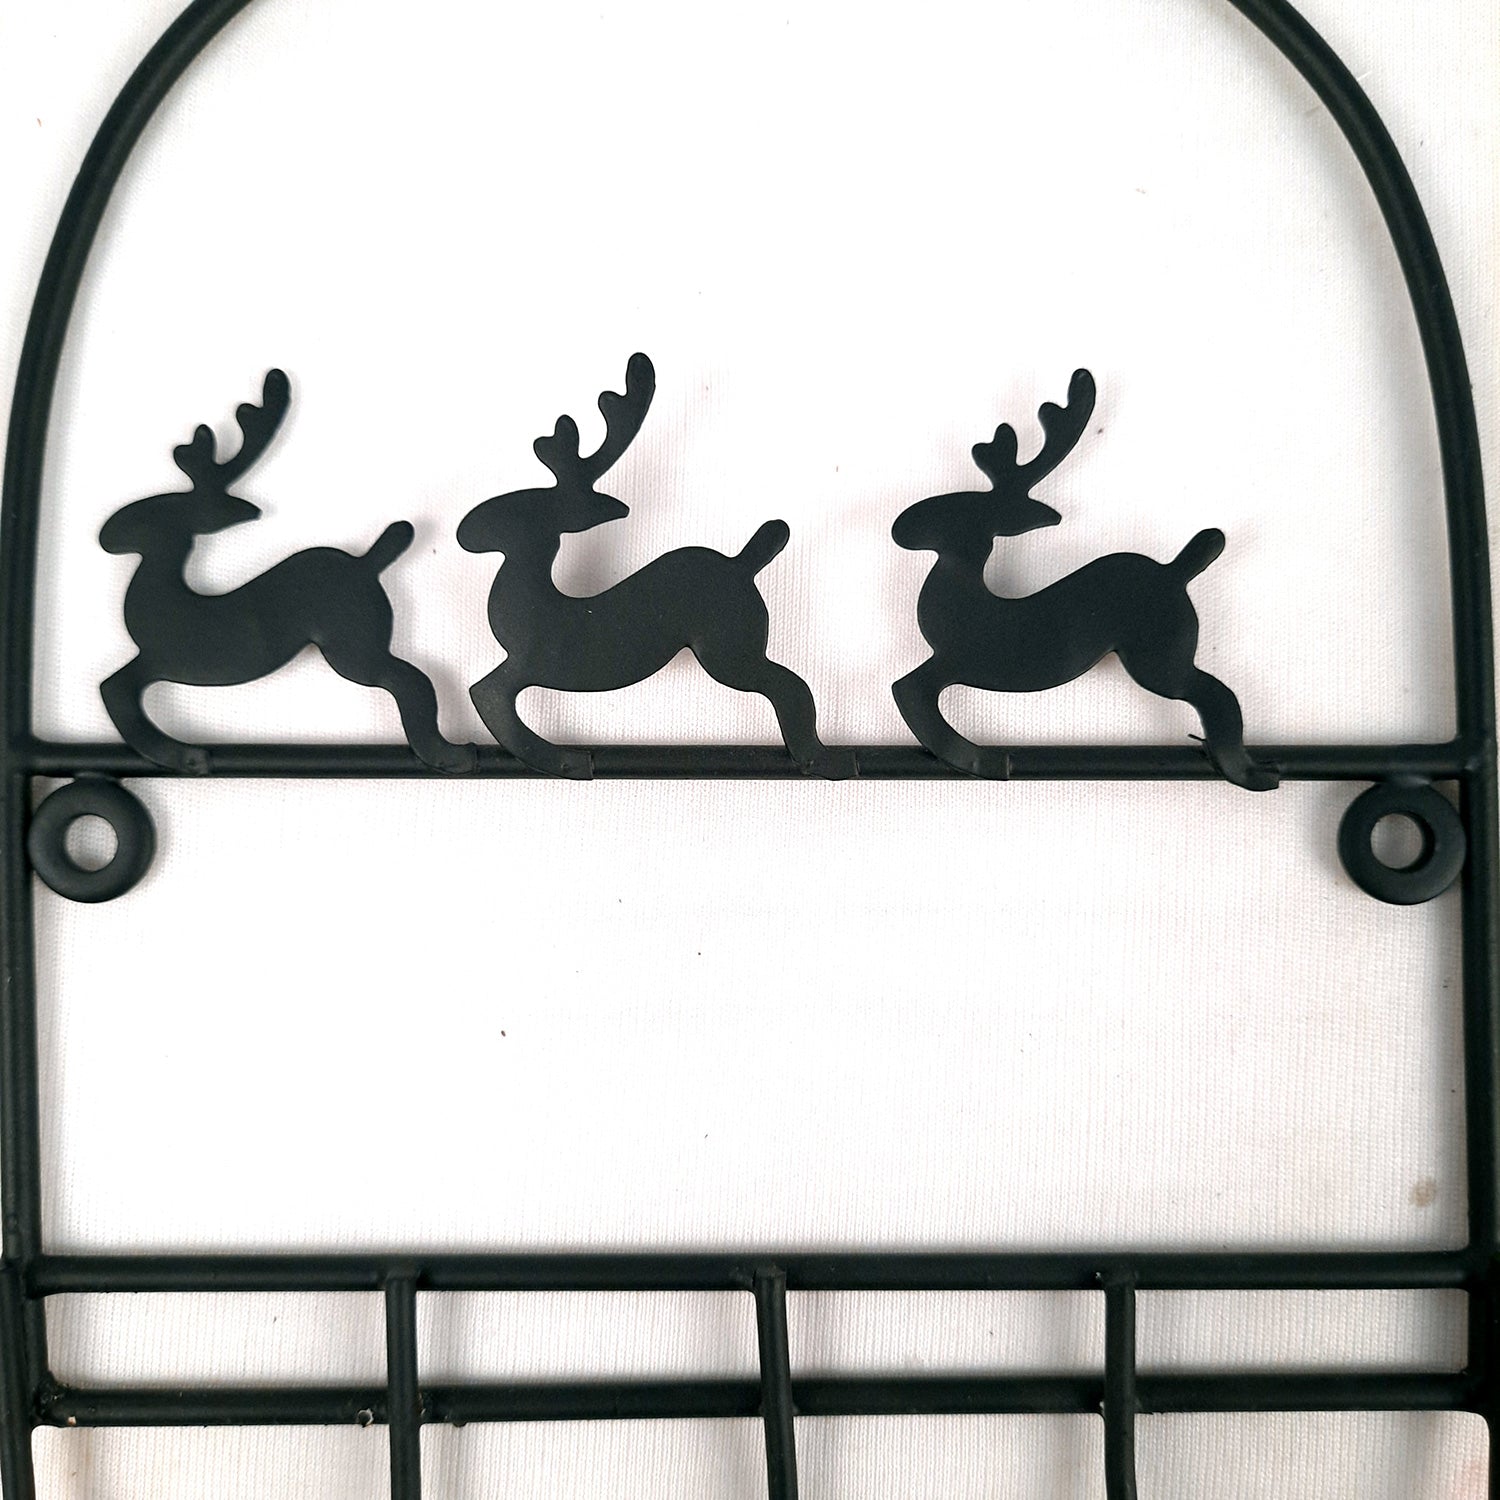 Key Holder Stands | Keys Hook Wall Hangers - Reindeer Design | Keys Organizer - For Home, Entrance, Office Decor & Gifts - 9 Inch (5 Hooks) - Apkamart #Style_Pack of 4